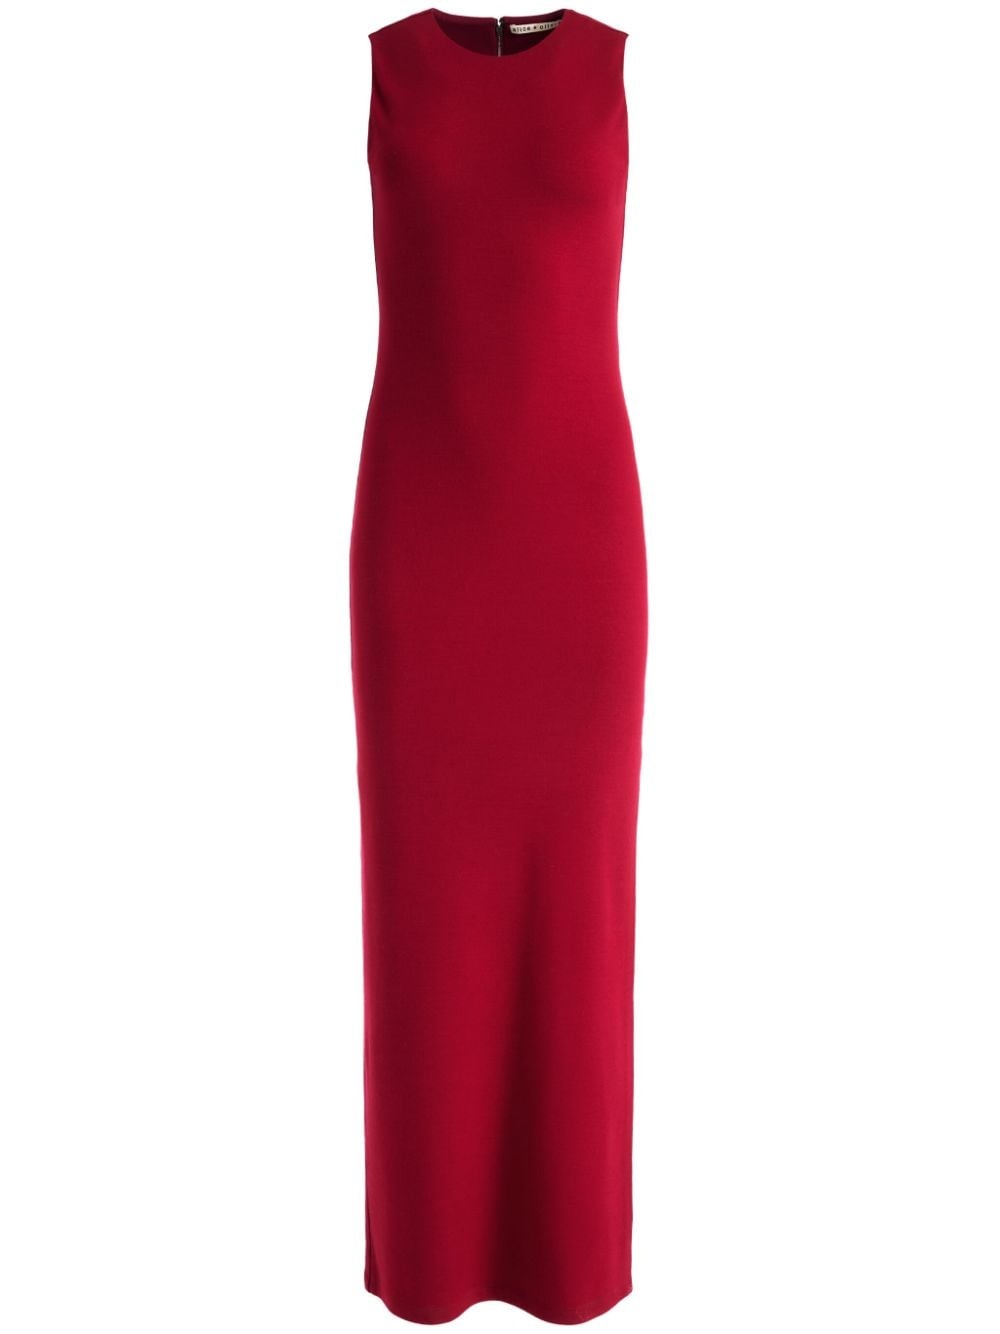 Delora sleeveless maxi dress - 1